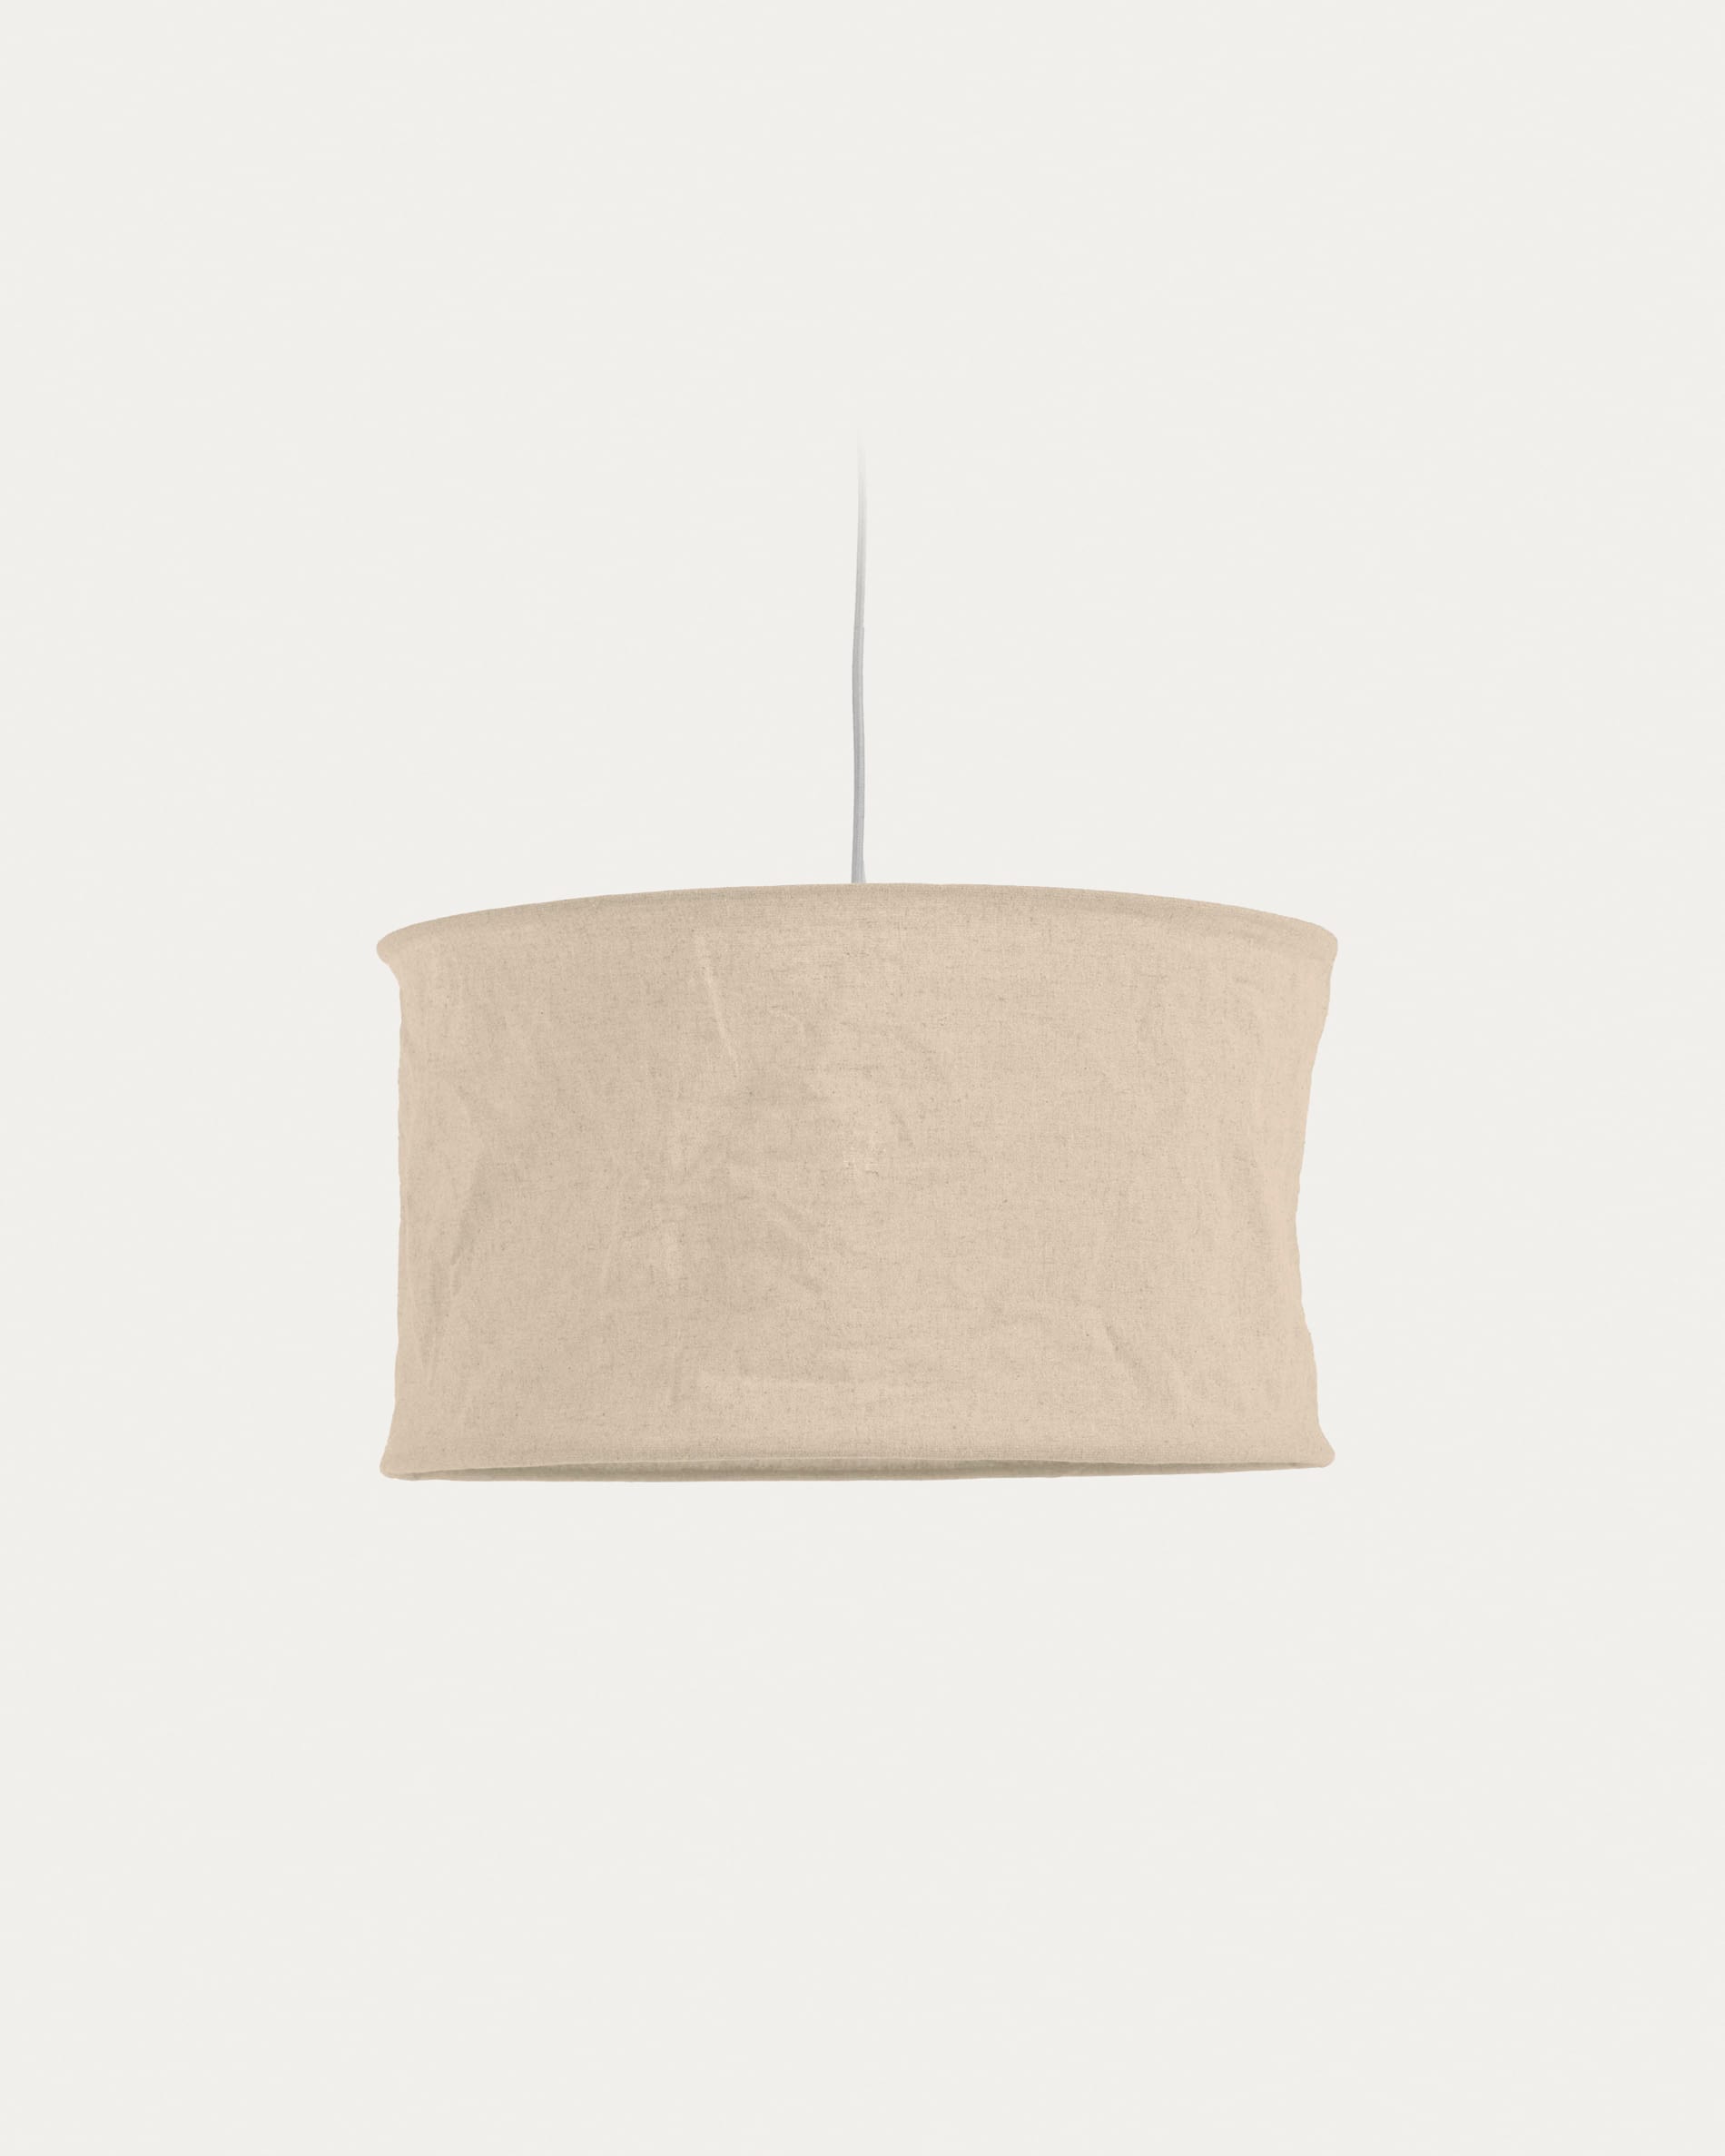 Paralume per lampada da soffitto Santana nera con diffusore bianco Ø 50 cm